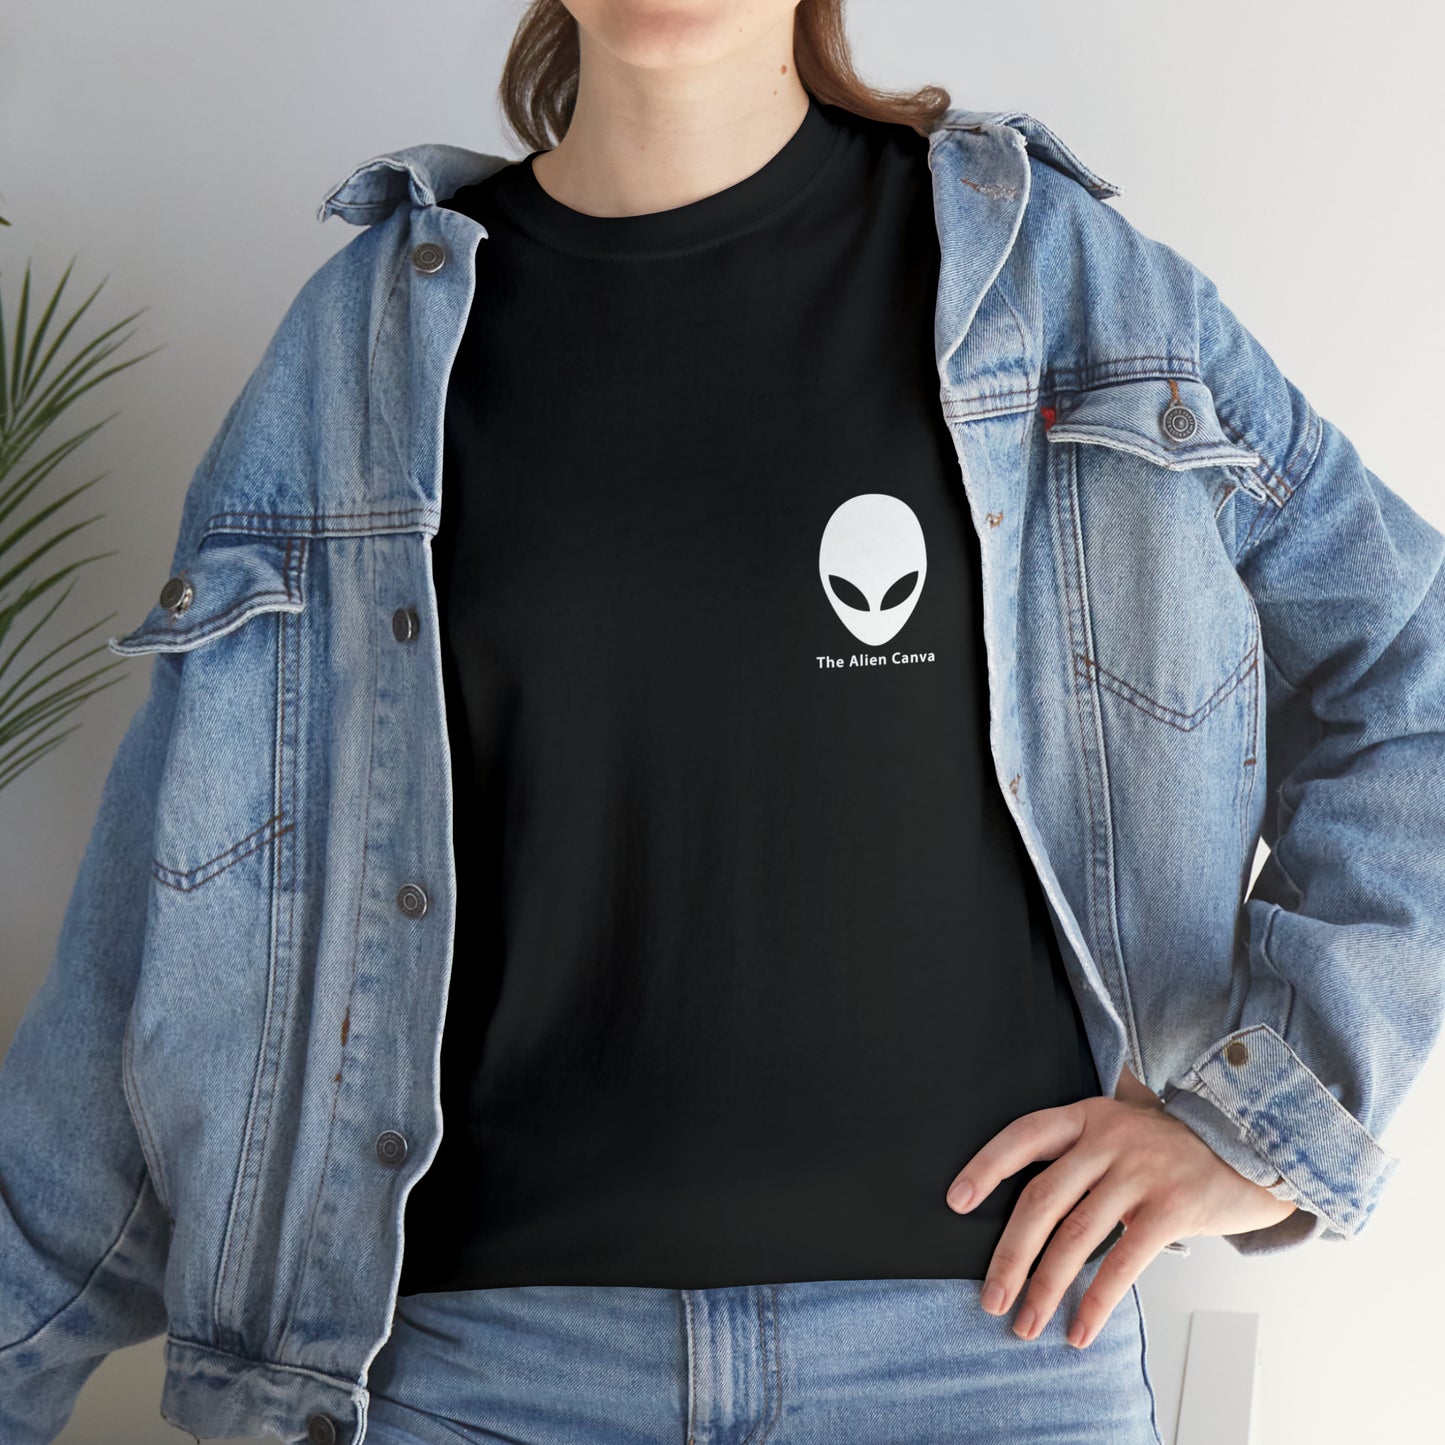 "Un faro de esperanza" - La camiseta alienígena